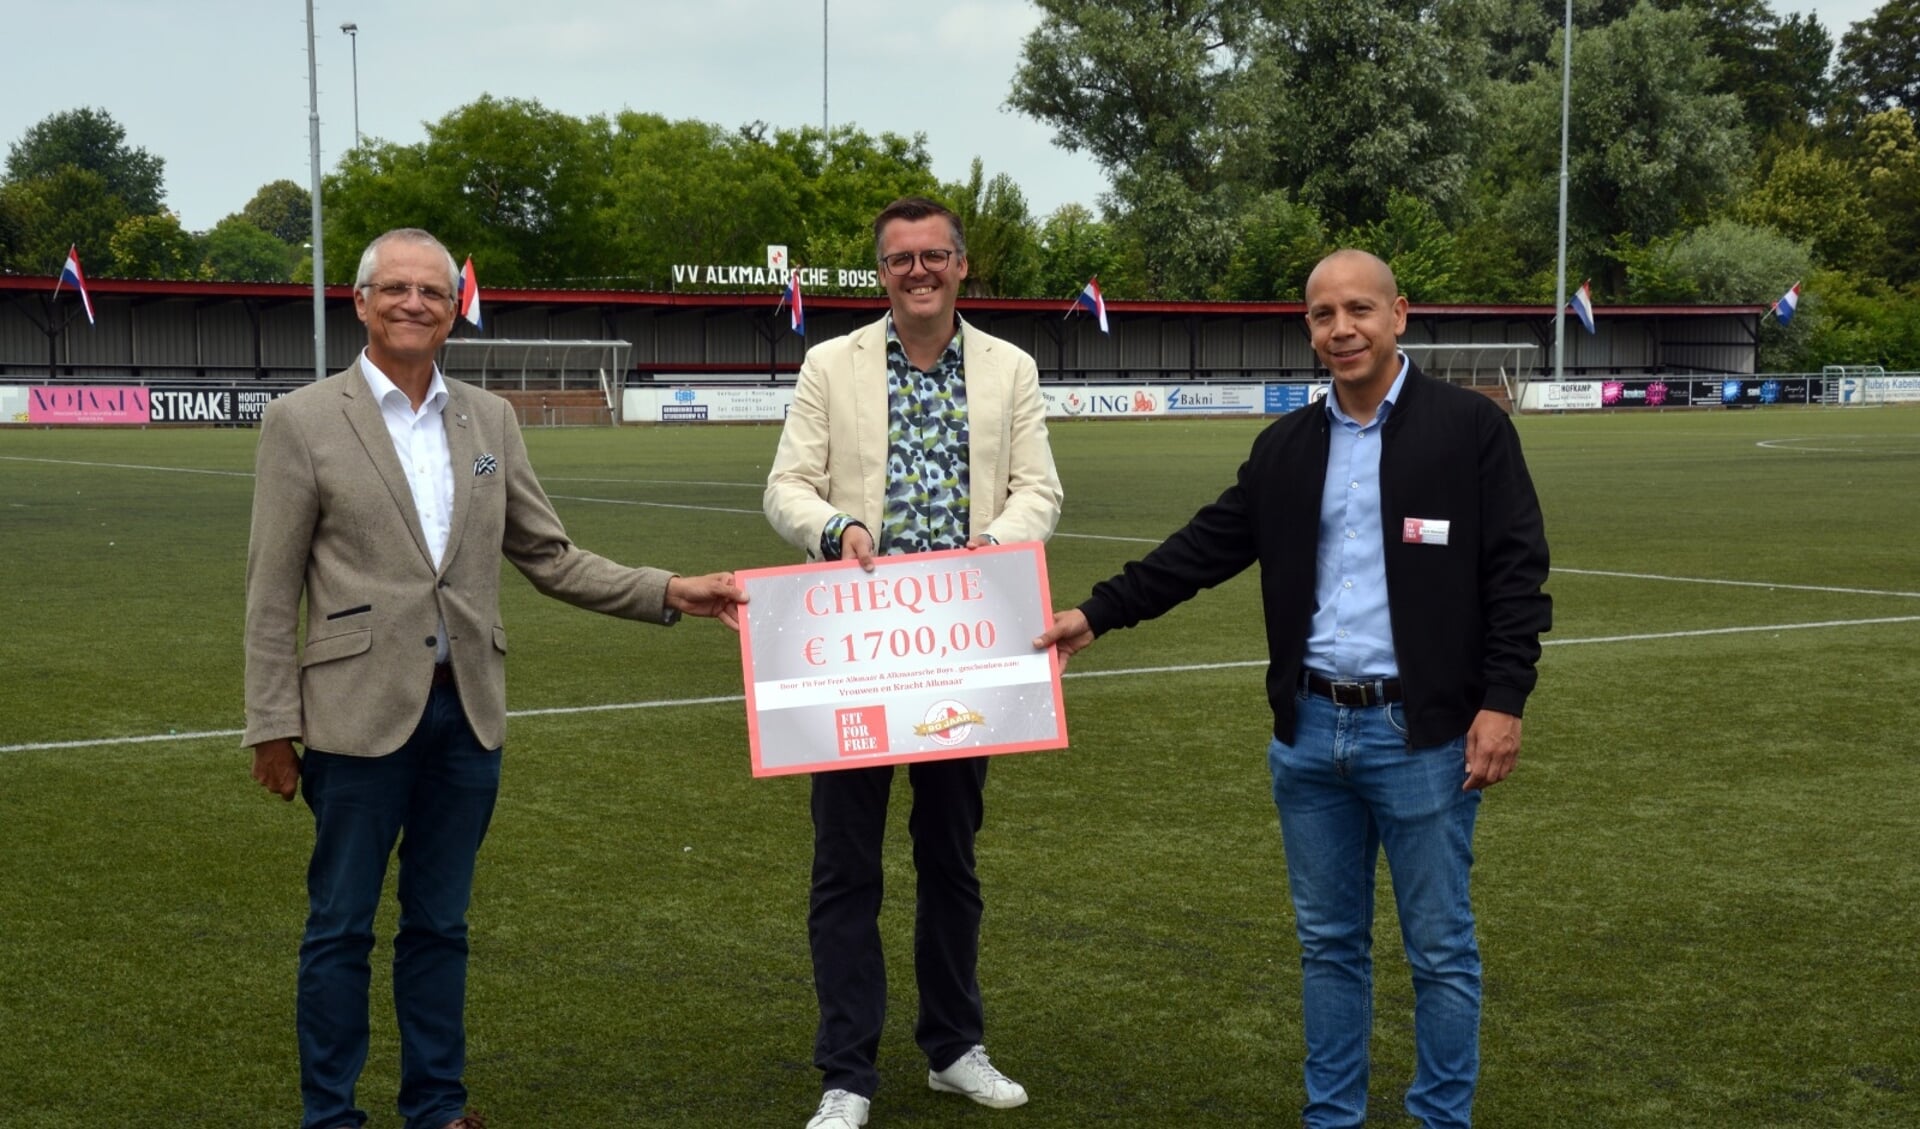 Wethouder Pieter Dijkman neemt de cheque in ontvangst van Raoul Guis, locatiemanager Fit for Free en Michiel Kuijpers, voorzitter van Alkmaarsche Boys.